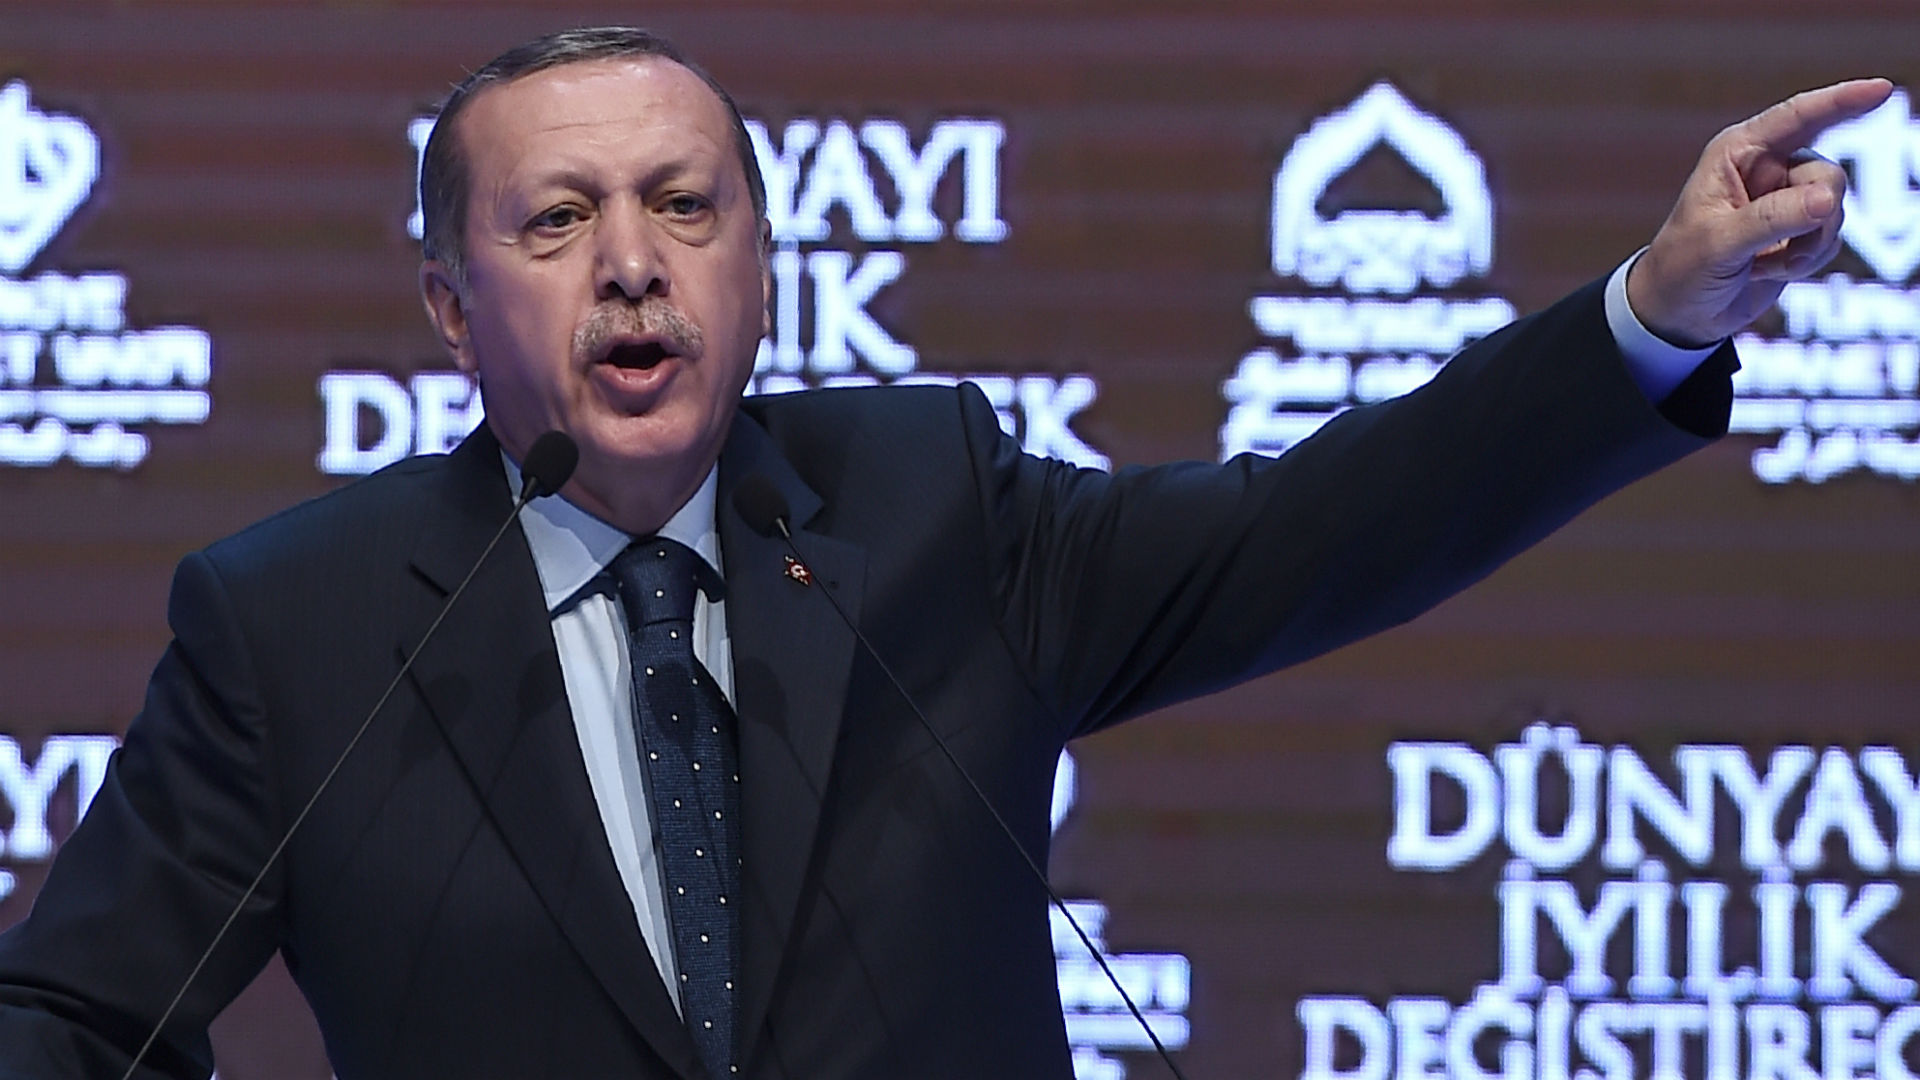 En plena crisis diplomática, Erdogan advierte a Holanda: "pagaréis un precio elevado"